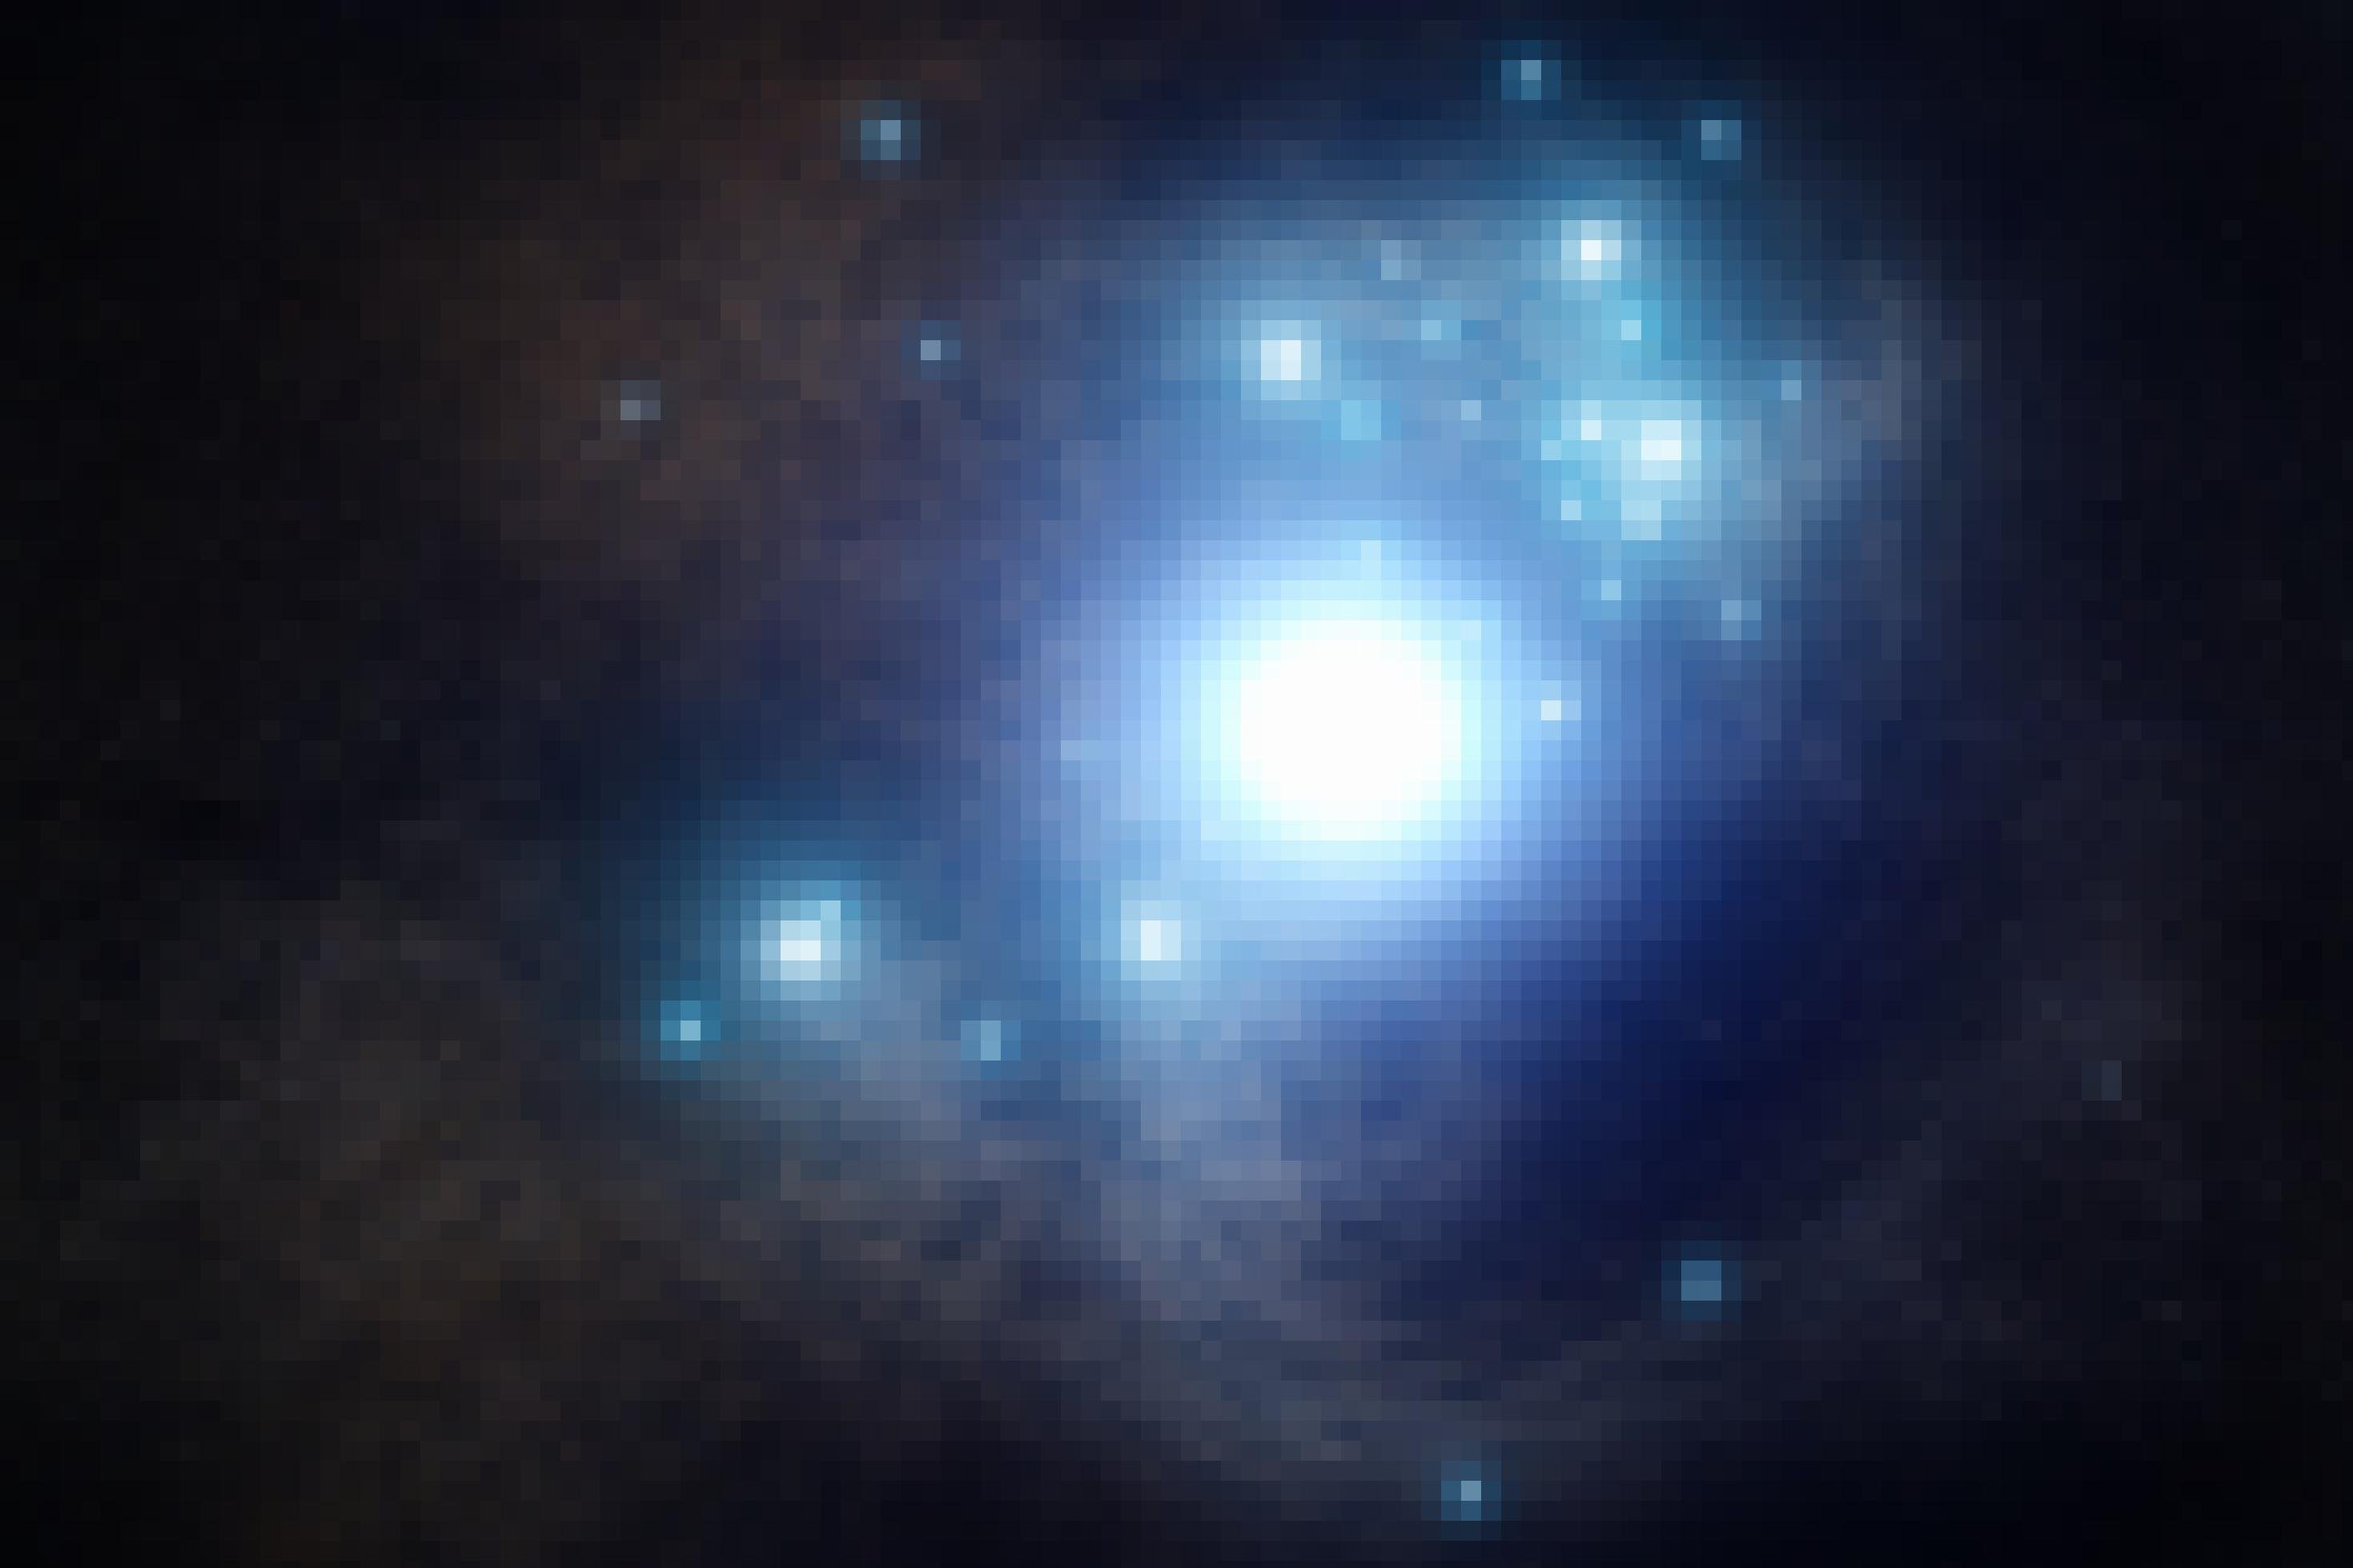 Das Bild zeigt rechts oberhalb des Zentrums einen verwaschenen hellblauen Kreis, umgeben von weiteren hellblauen Punkten. Es handelt sich um die künstlerische Darstellung eines blauen Riesensterns und einiger weiterer blauer Sonnen. Der Stern befindet sich im Endstadium seines Lebens und wird bald als gigantische Supernova explodieren. Eine solche Explosion wurde im Jahr 2017 in der 65 Millionen Lichtjahre entfernten Spiralgalaxie NGC 3938 beobachtet. Blaue Riesensterne leuchten so intensiv, dass sie ihren Brennstoff in wenigen Millionen Jahren verbrauchen. Auch die ersten Sterne in der Milchstraße vor vielen Jahrmilliarden waren blaue Riesen, die nur kurz lebten.